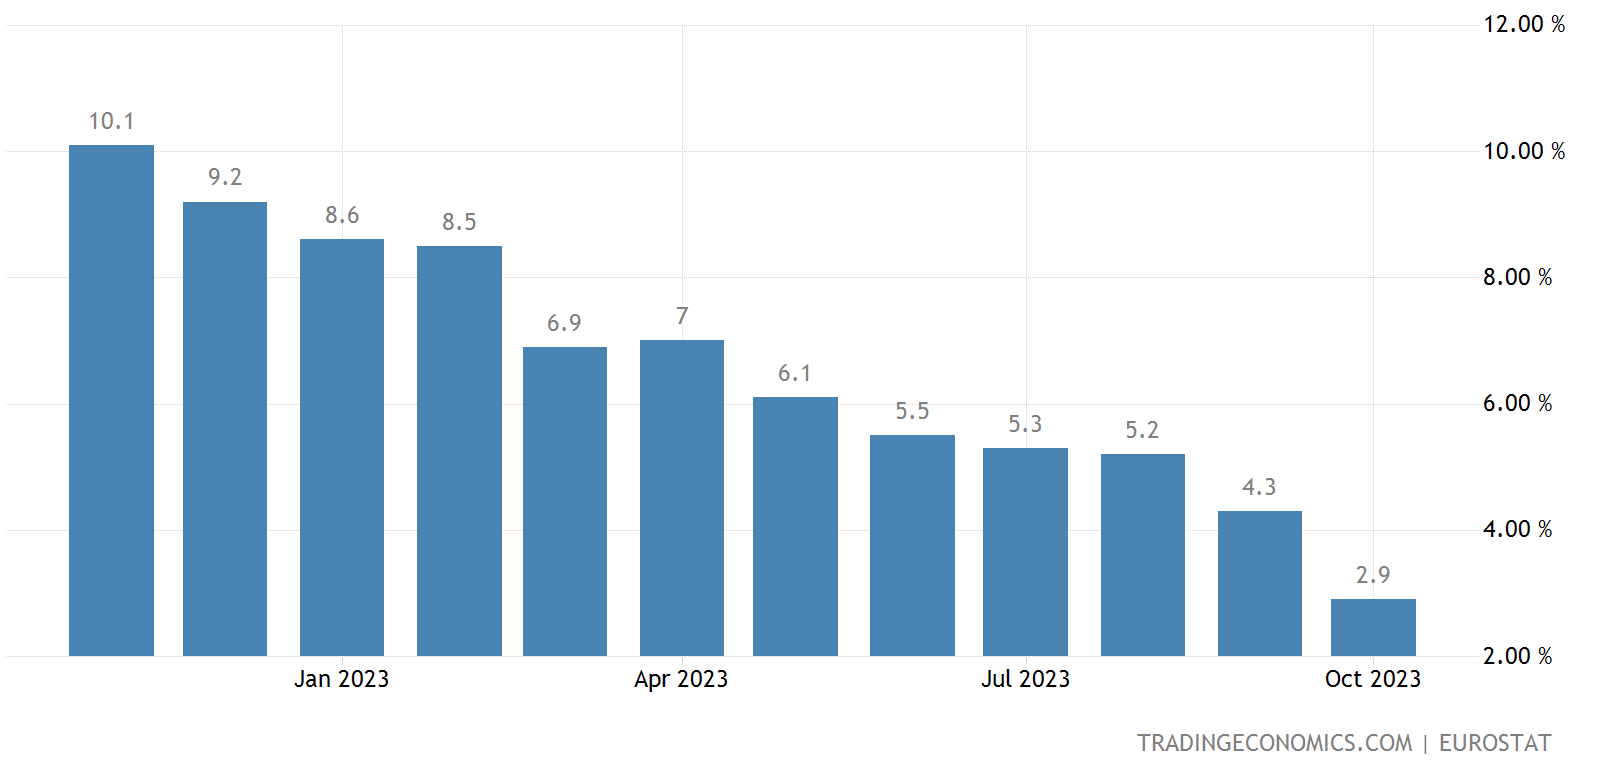 Tỷ lệ lạm phát của EU giảm xuống mức thấp nhất kể từ năm 2021, áp lực lên ECB đang giảm bớt